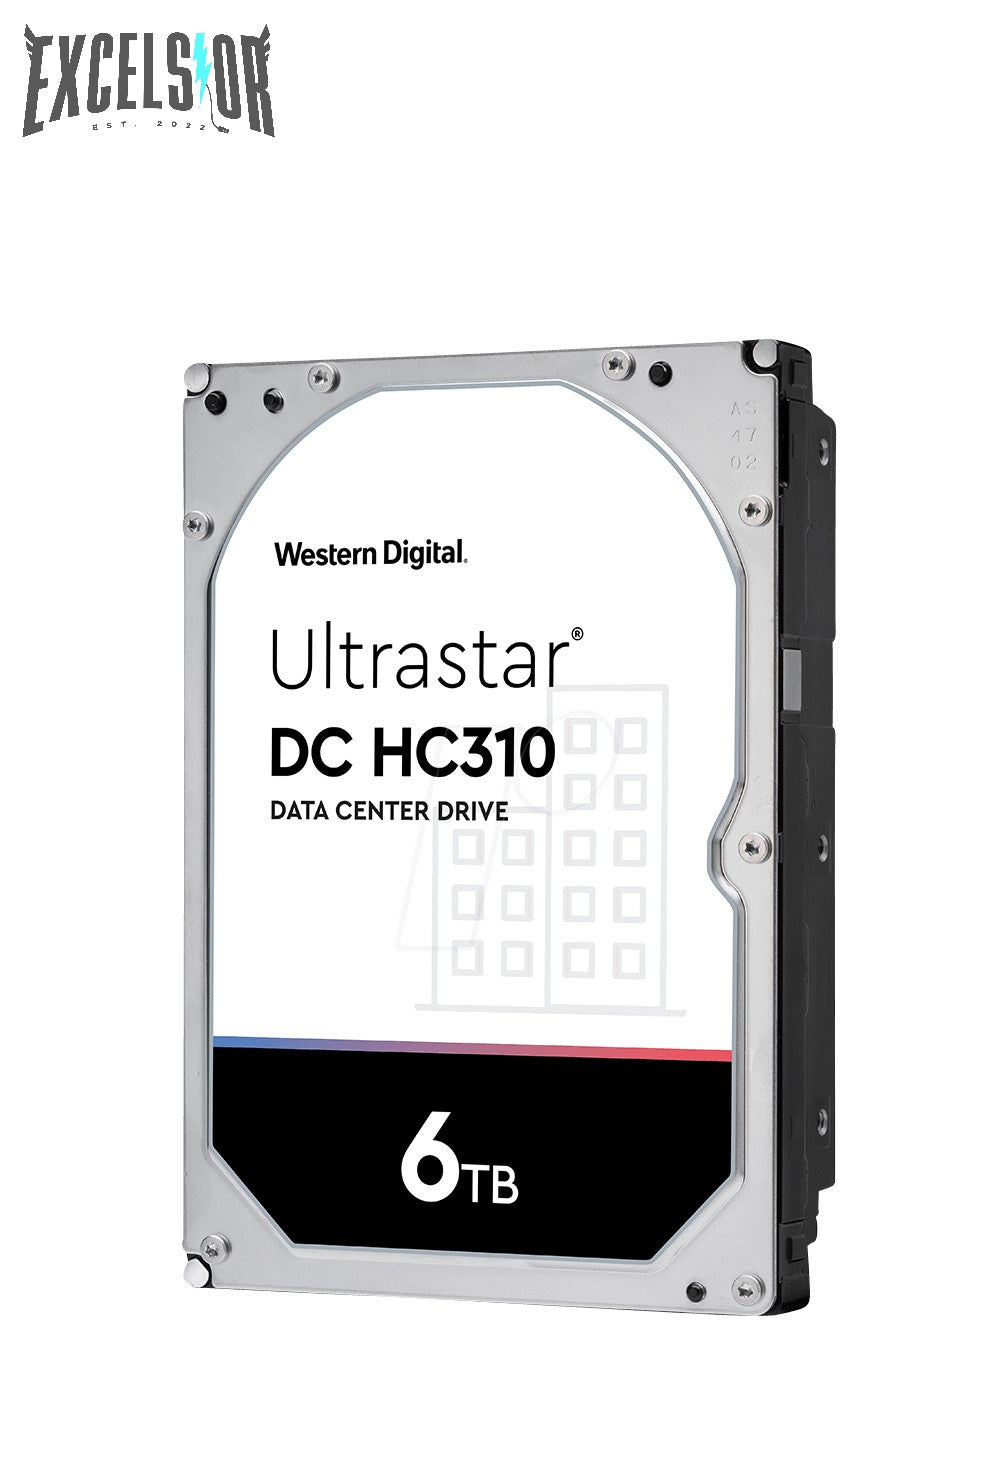 Western Digital Ultrastar DC HC300 Series